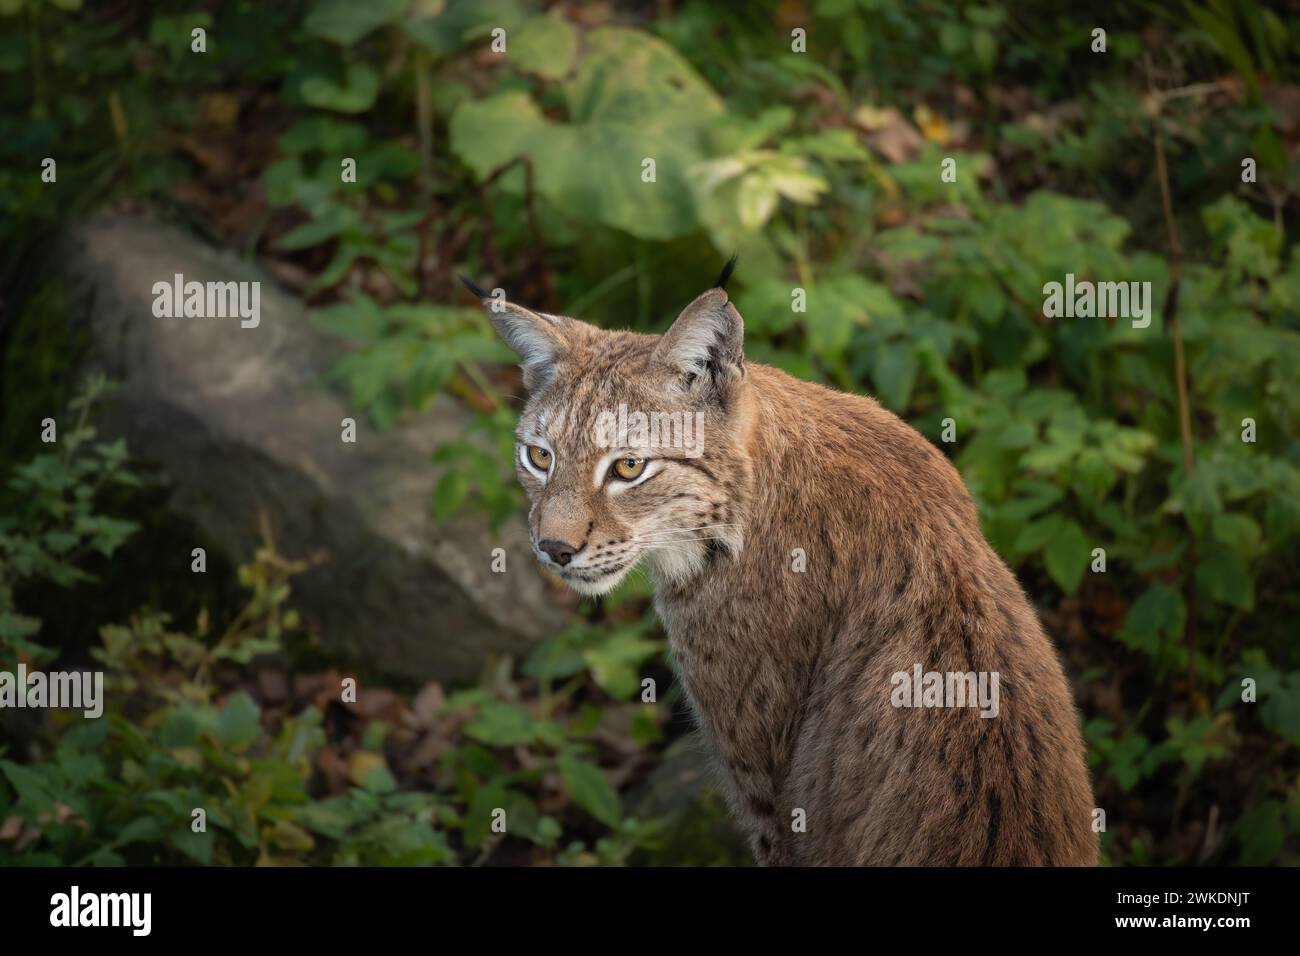 Porträt des Eurasischen Lynx in Stockholm Skansen. Furry Wildcat im Naturpark in Schweden. Stockfoto